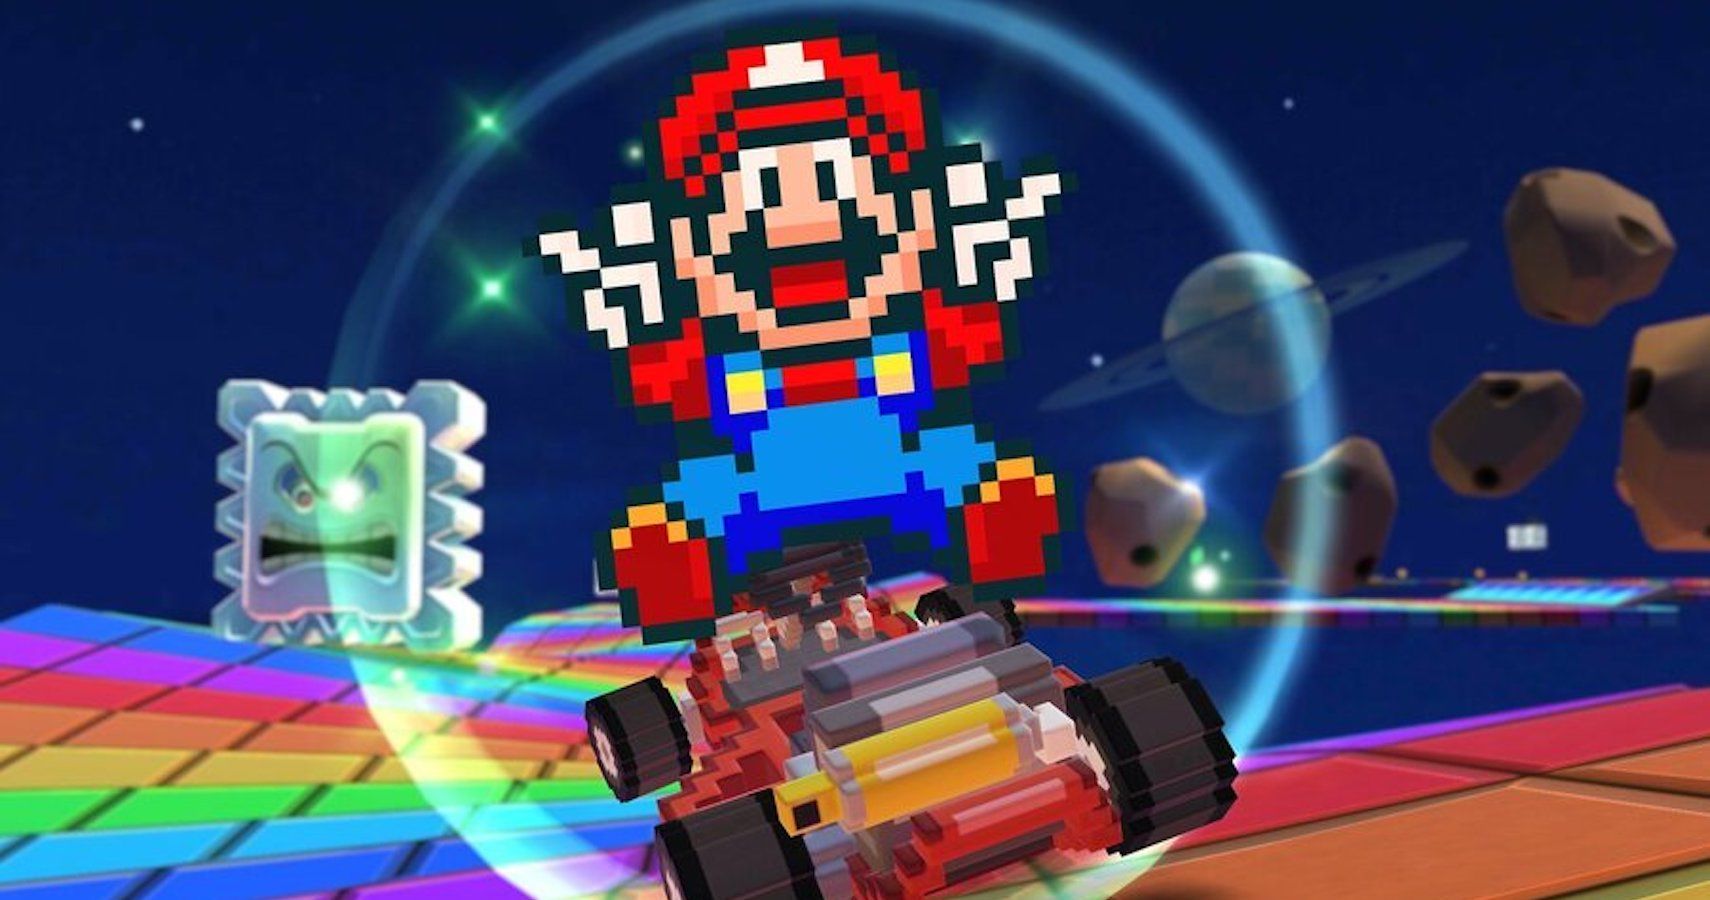 Play Mario Kart Tour